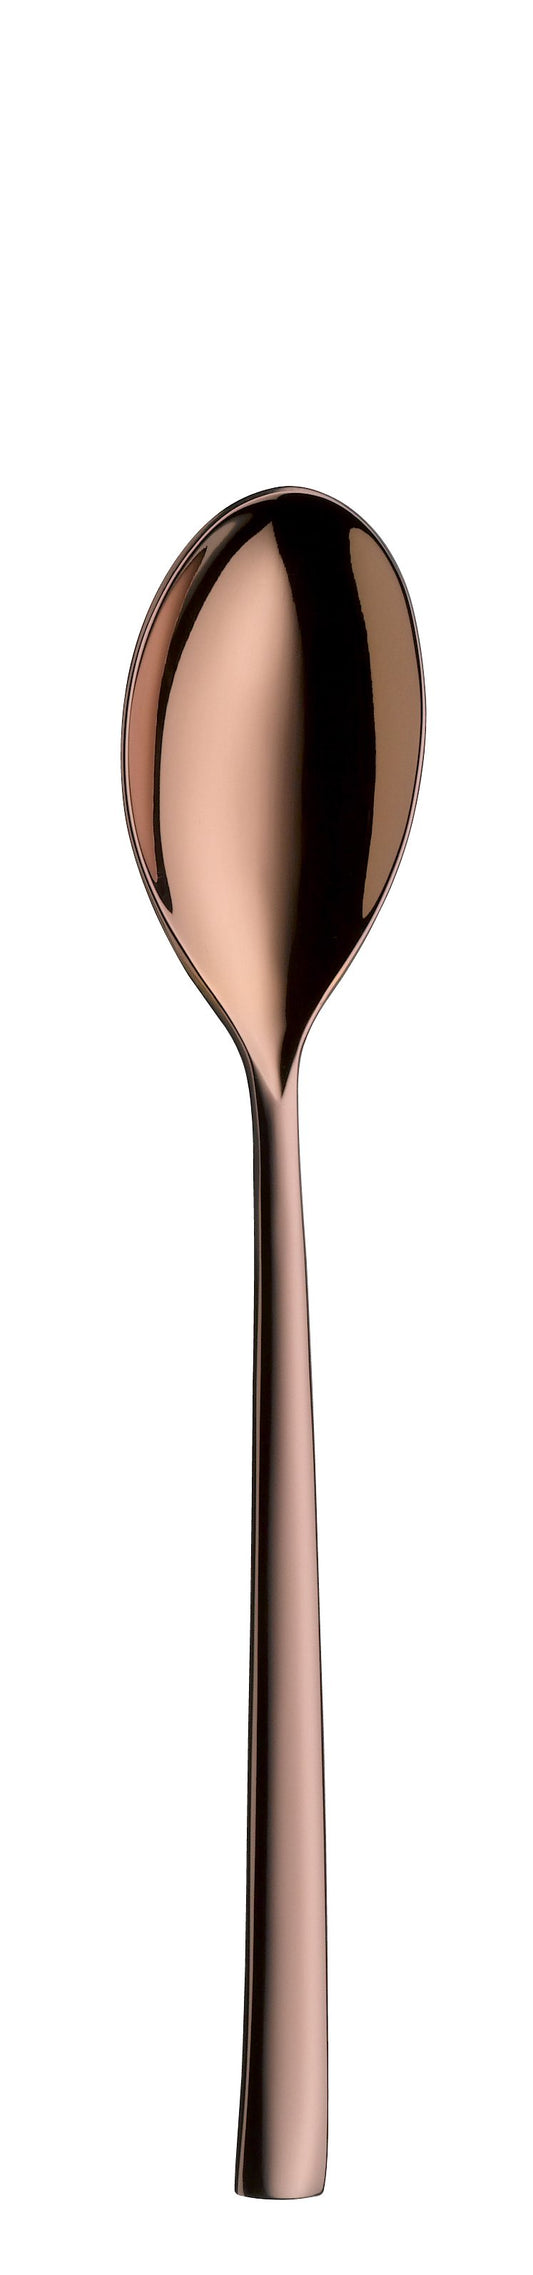 Dessert spoon TALIA PVD copper 206mm